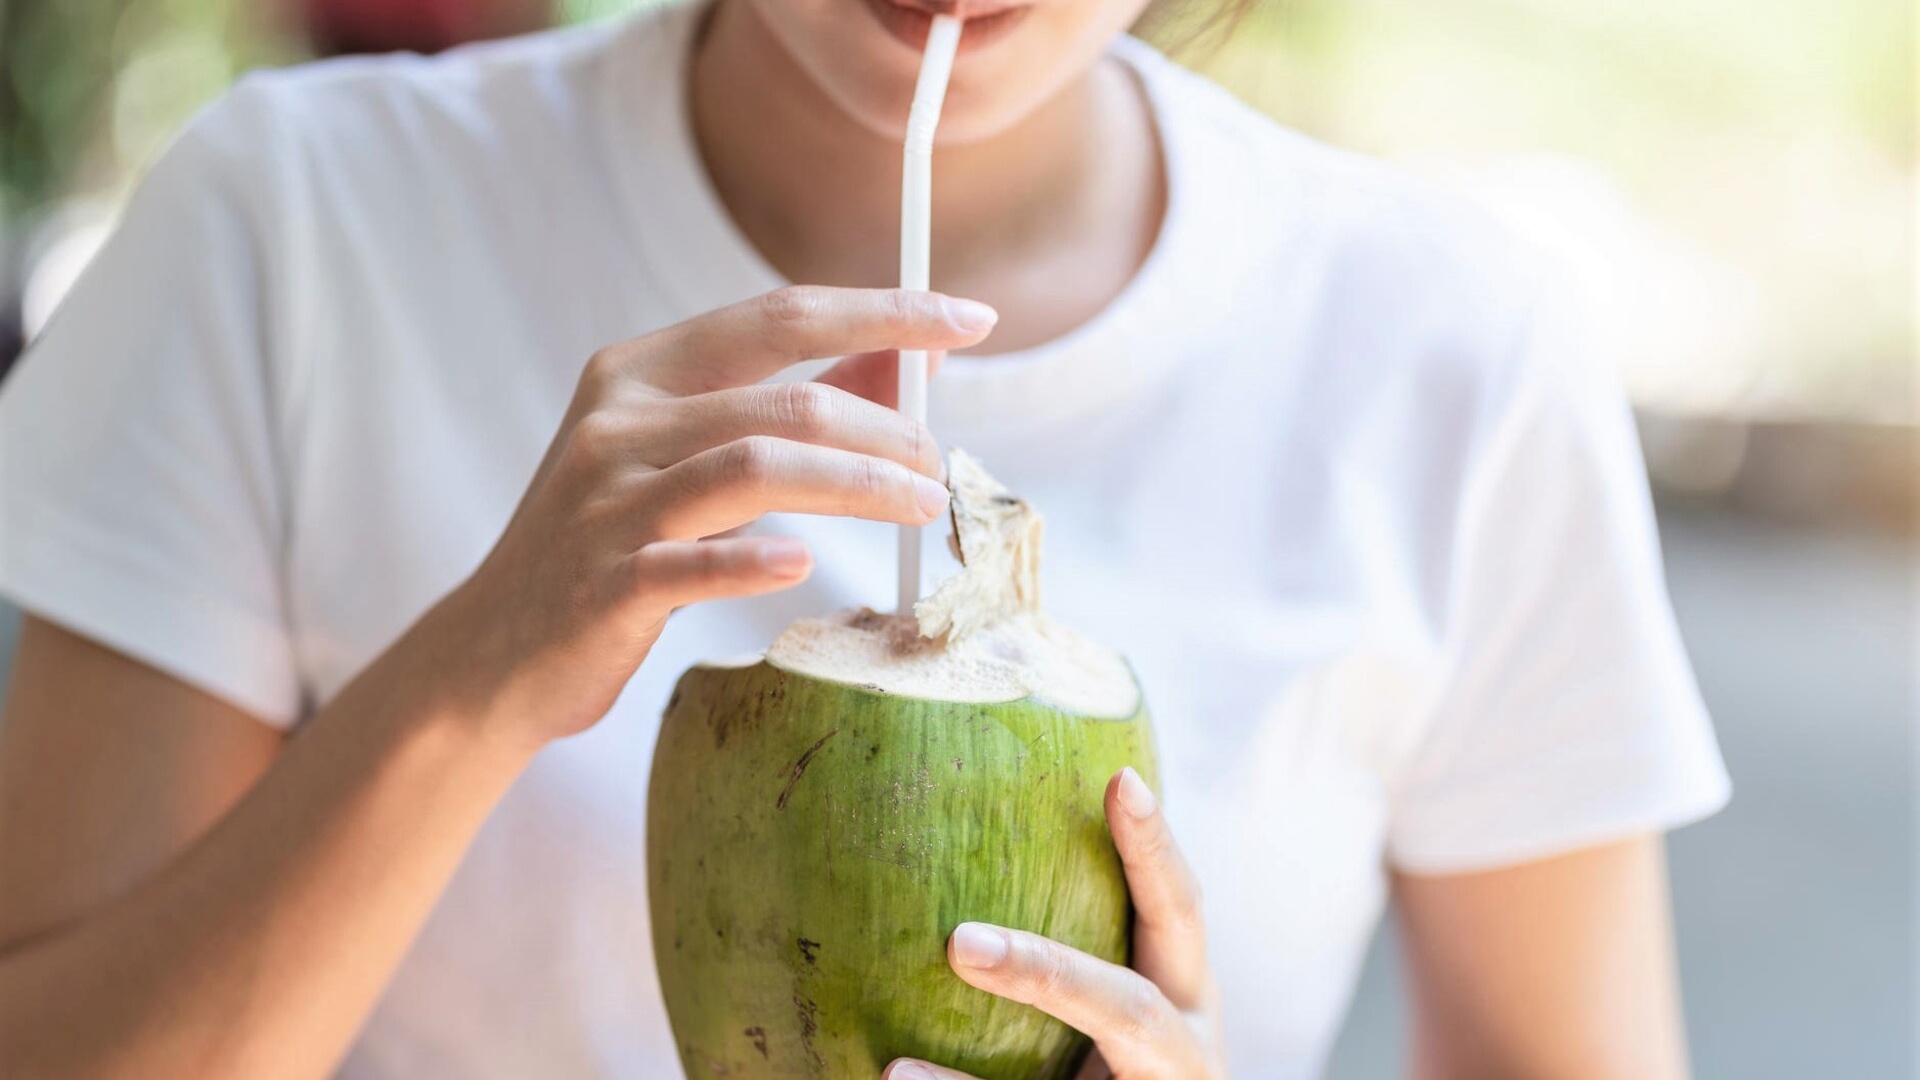 Có những nguyên tắc nào cần tuân thủ khi uống nước dừa để giảm đau bao tử?
